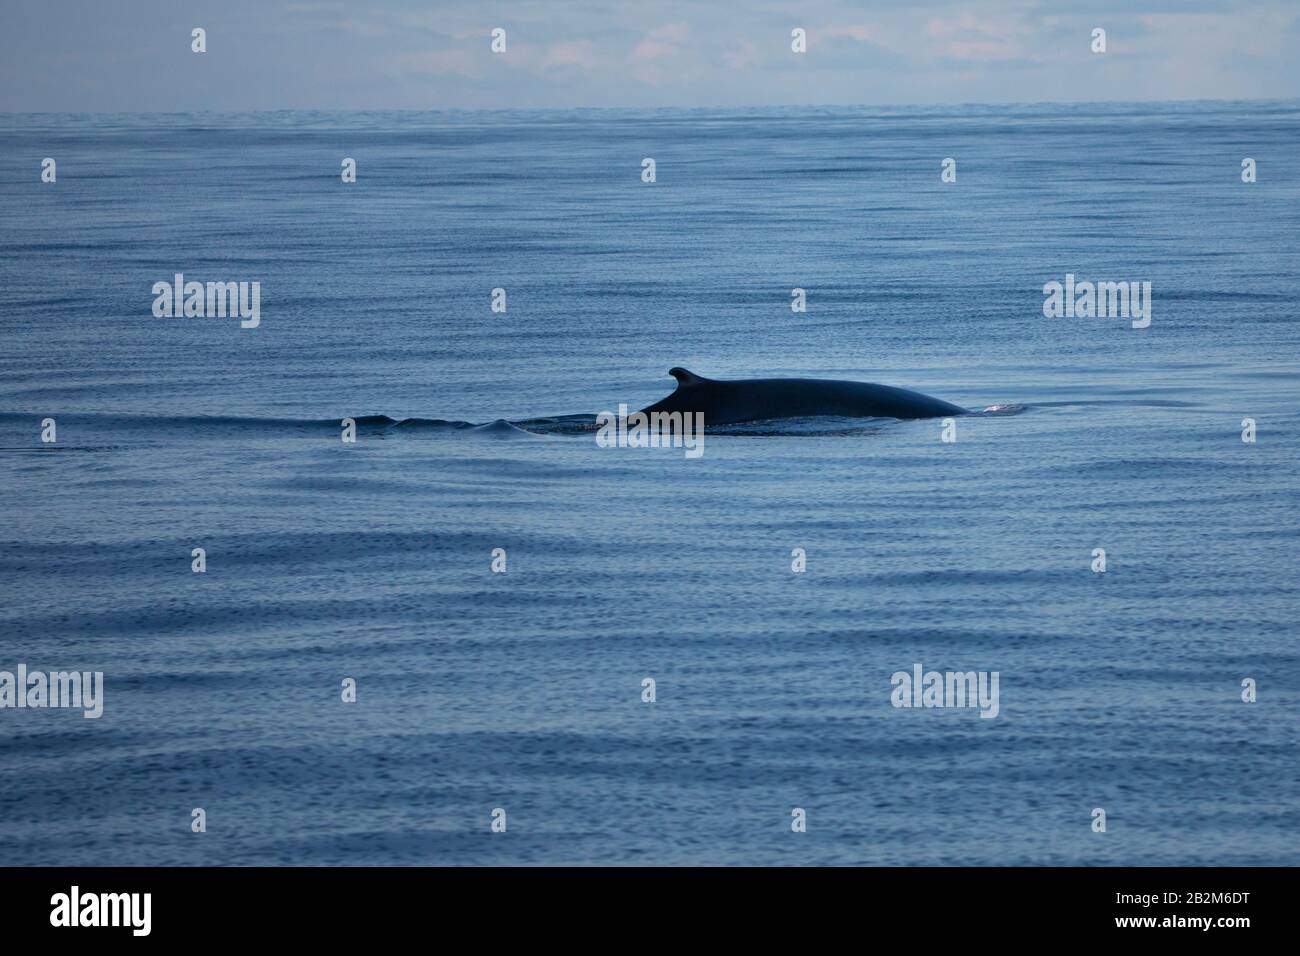 Baleine à bosse du nord, Spitsbergen, Norvège. Mammifères marins de l'arctique, voyageant dans le monde entier. Banque D'Images